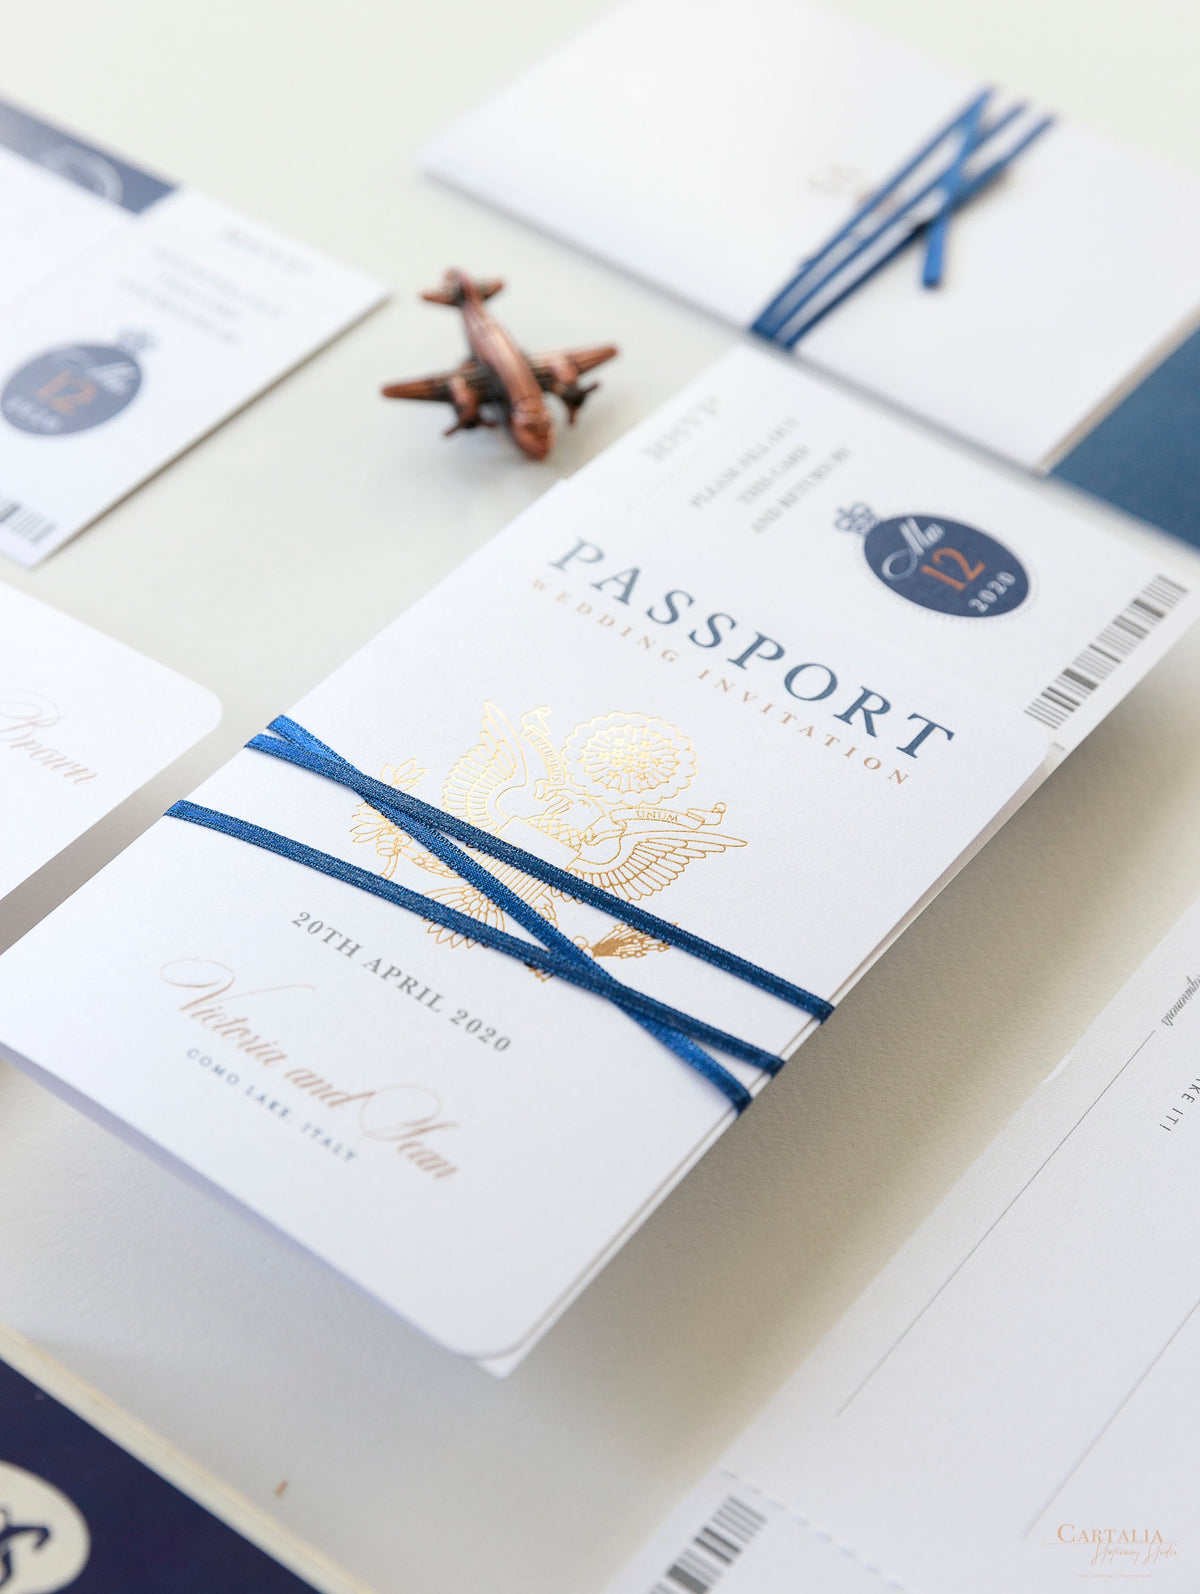 Suite di lusso con passaporto in lamina d'oro rosa e passaporto blu scuro e carta d'imbarco